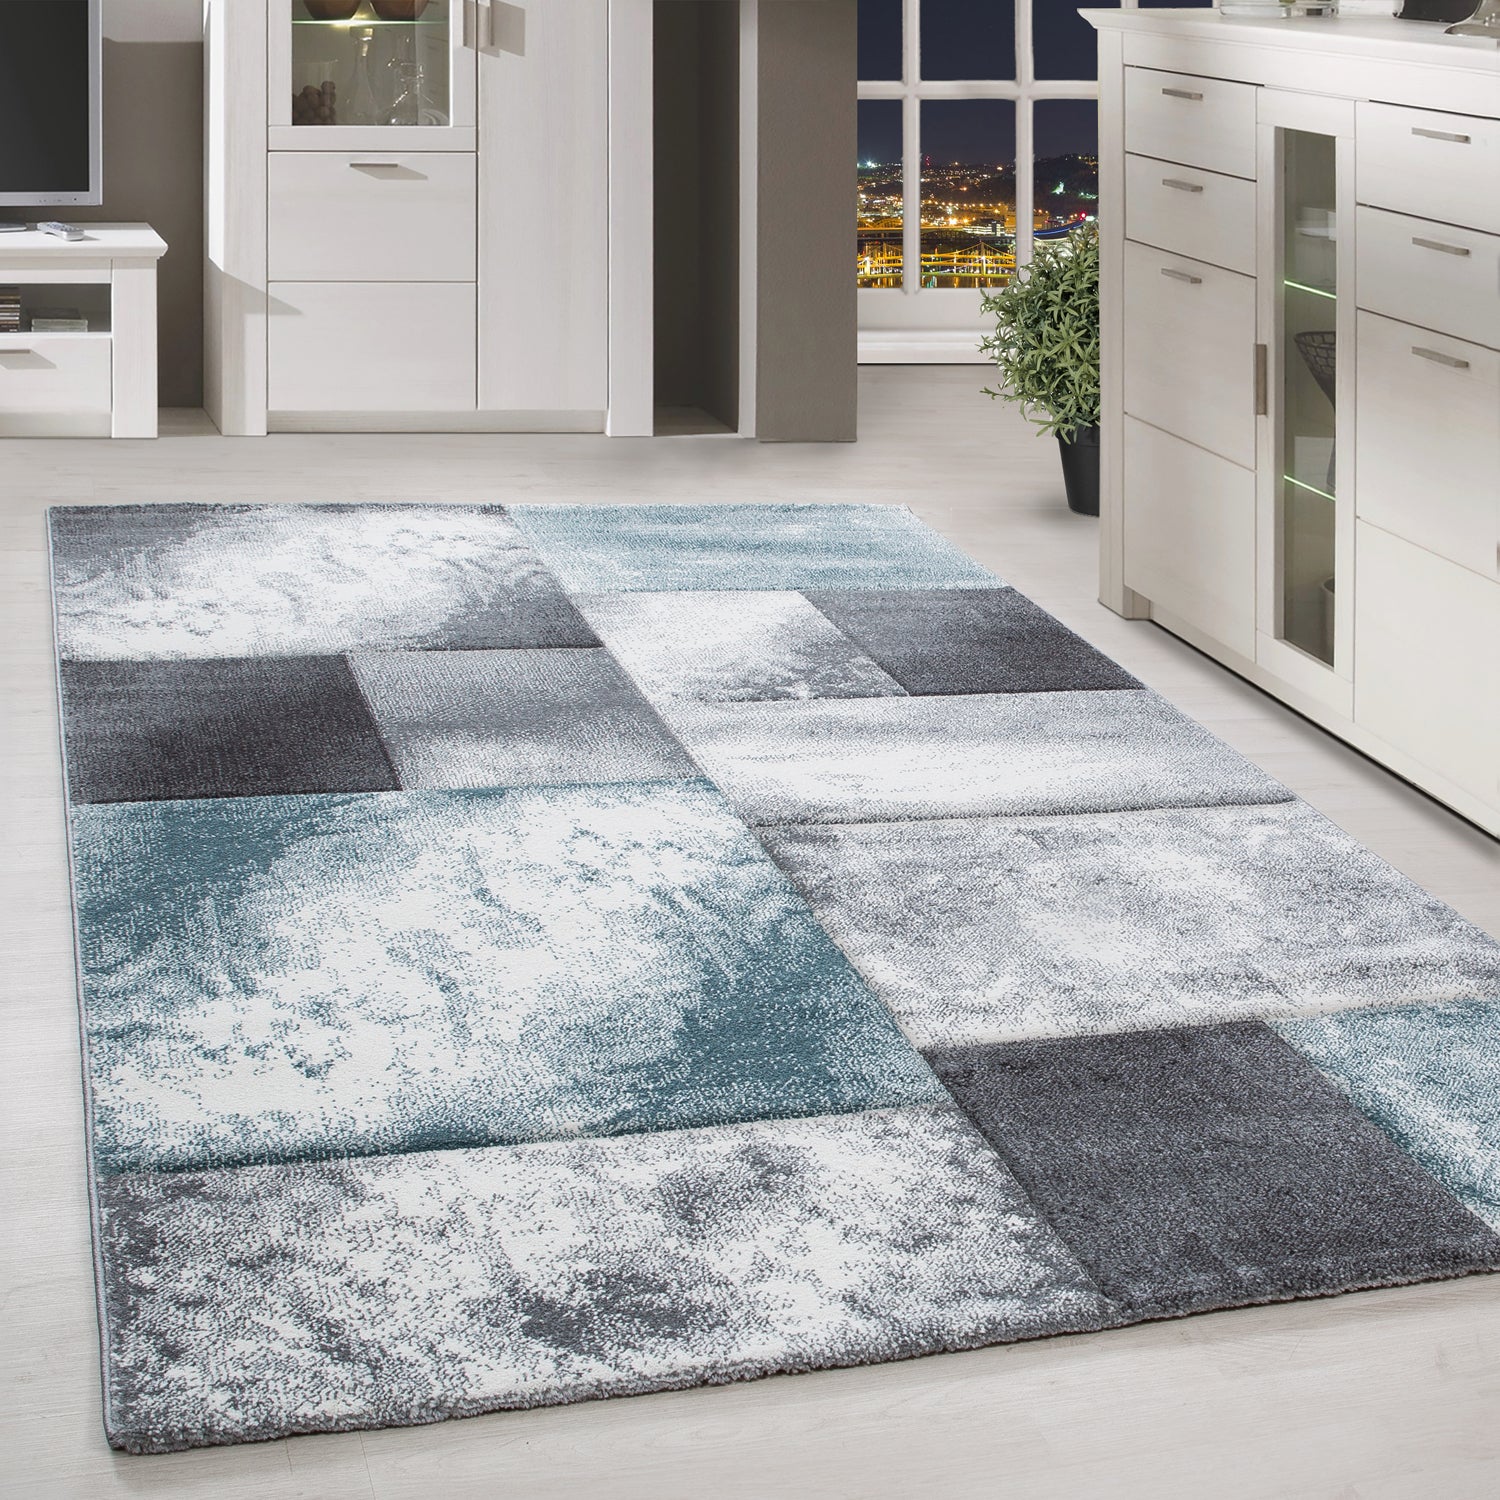 Kurzflor Design Teppich Rechteck Karo Muster Wohnzimmerteppich Blau Weiß Meliert